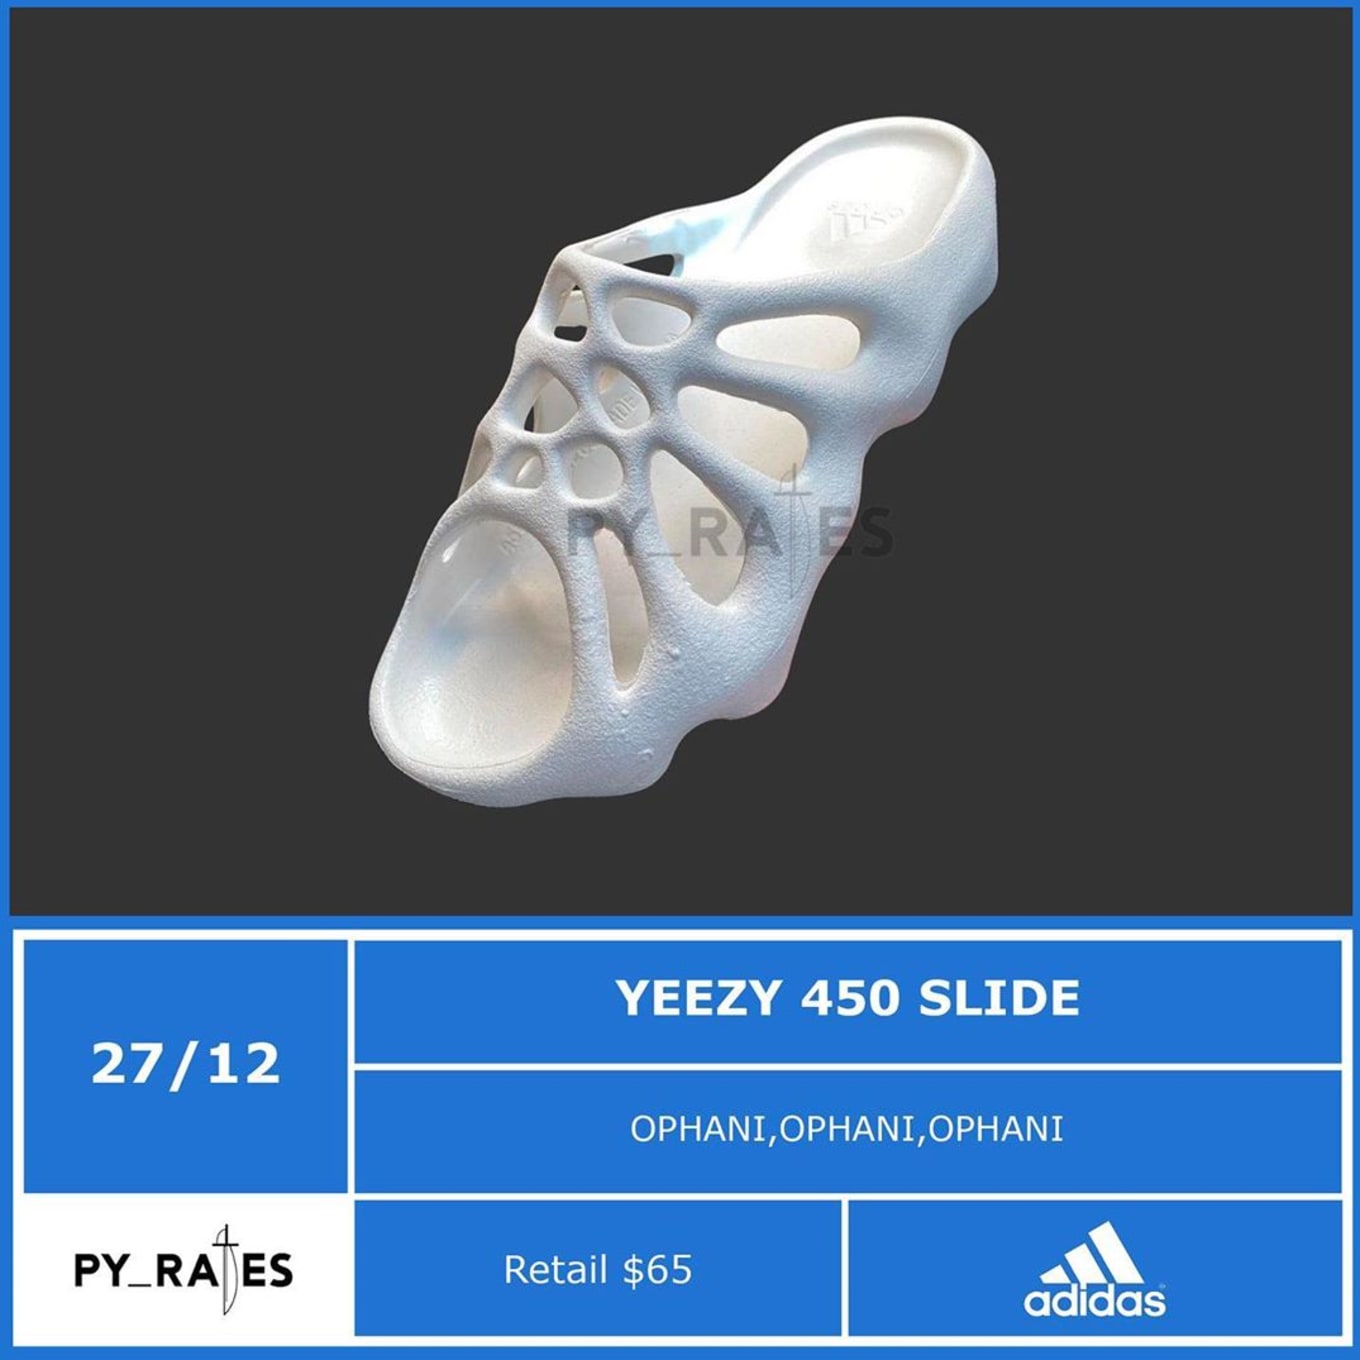 Adidas Yeezy 450 Slide 'Ophani' Release 